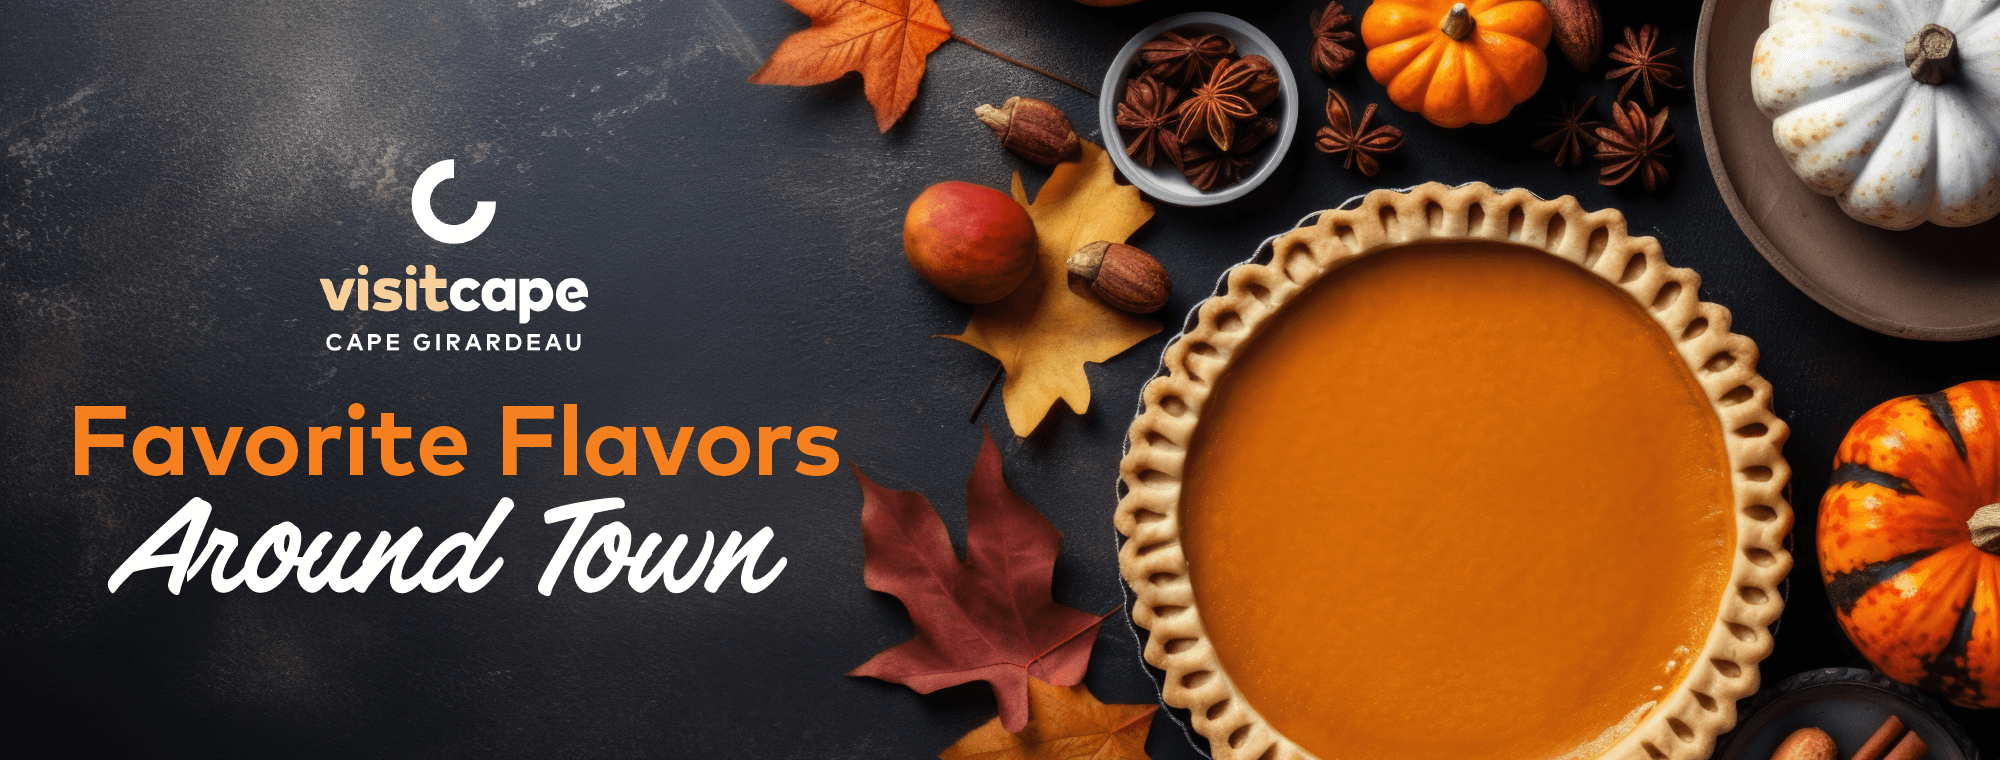 Pumpkin pie with title "Favorite Flavors Around Town"